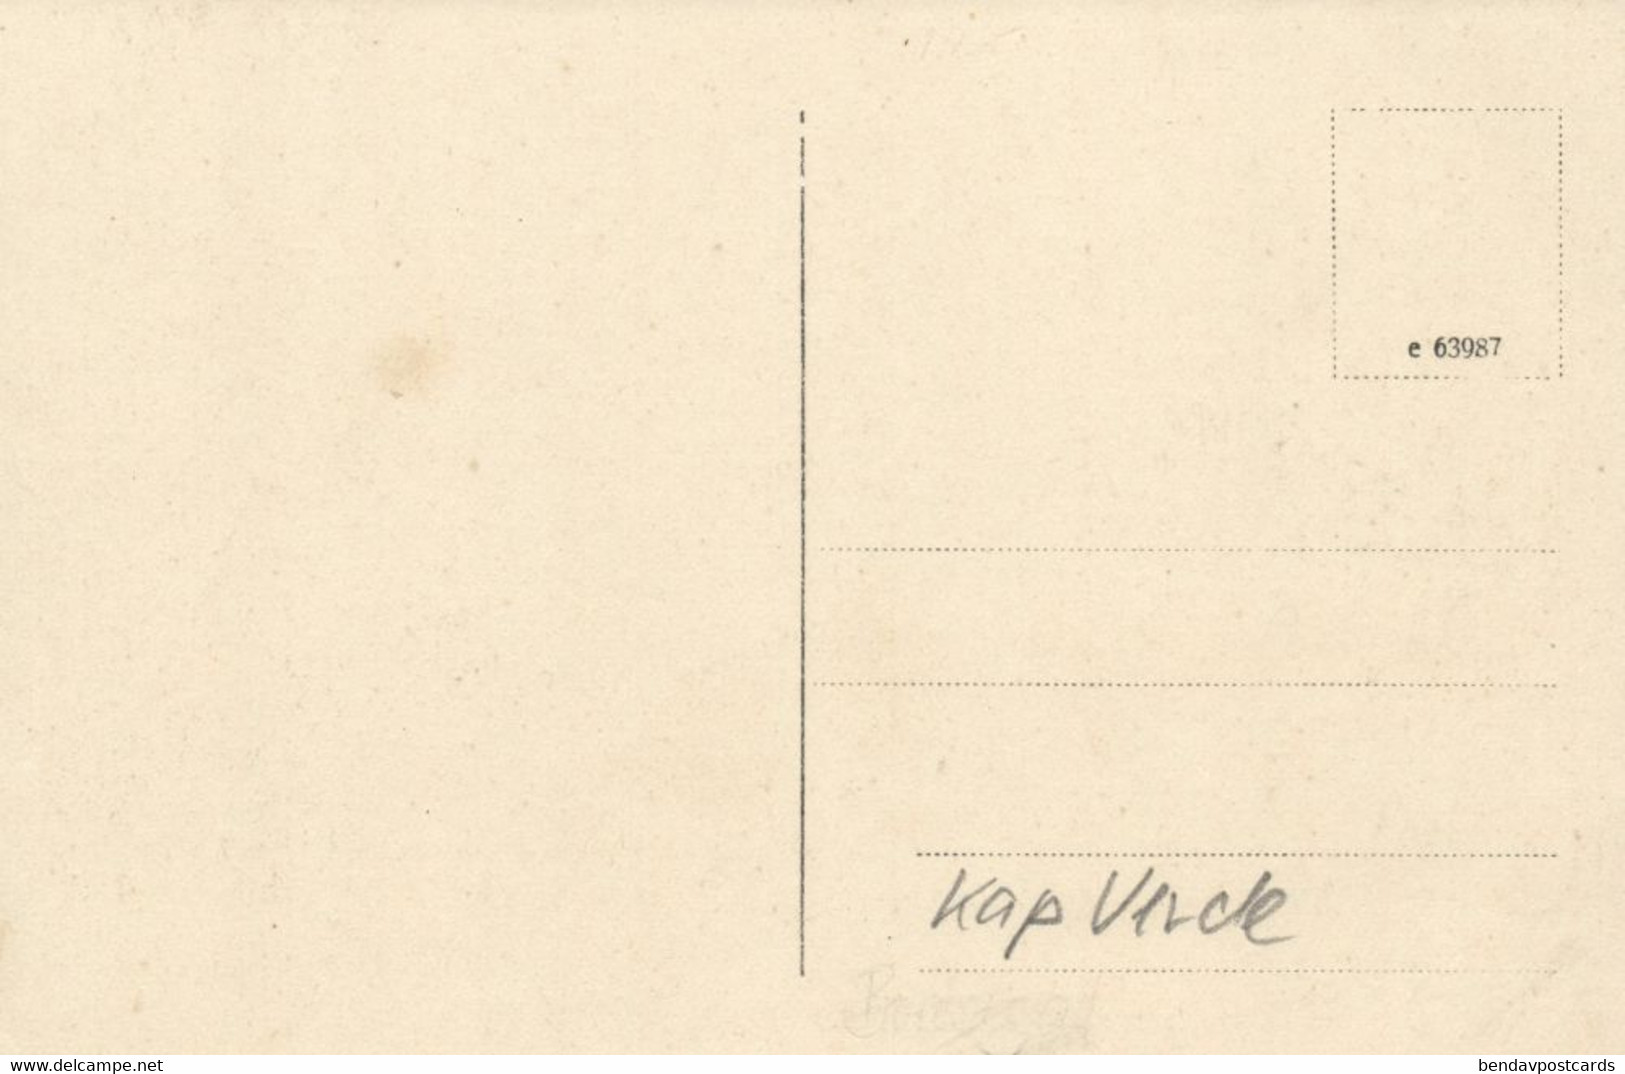 Cape Verde, SÃO VICENTE, Estação Telegrafica, Telegraph Station (1920s) Postcard - Cap Vert